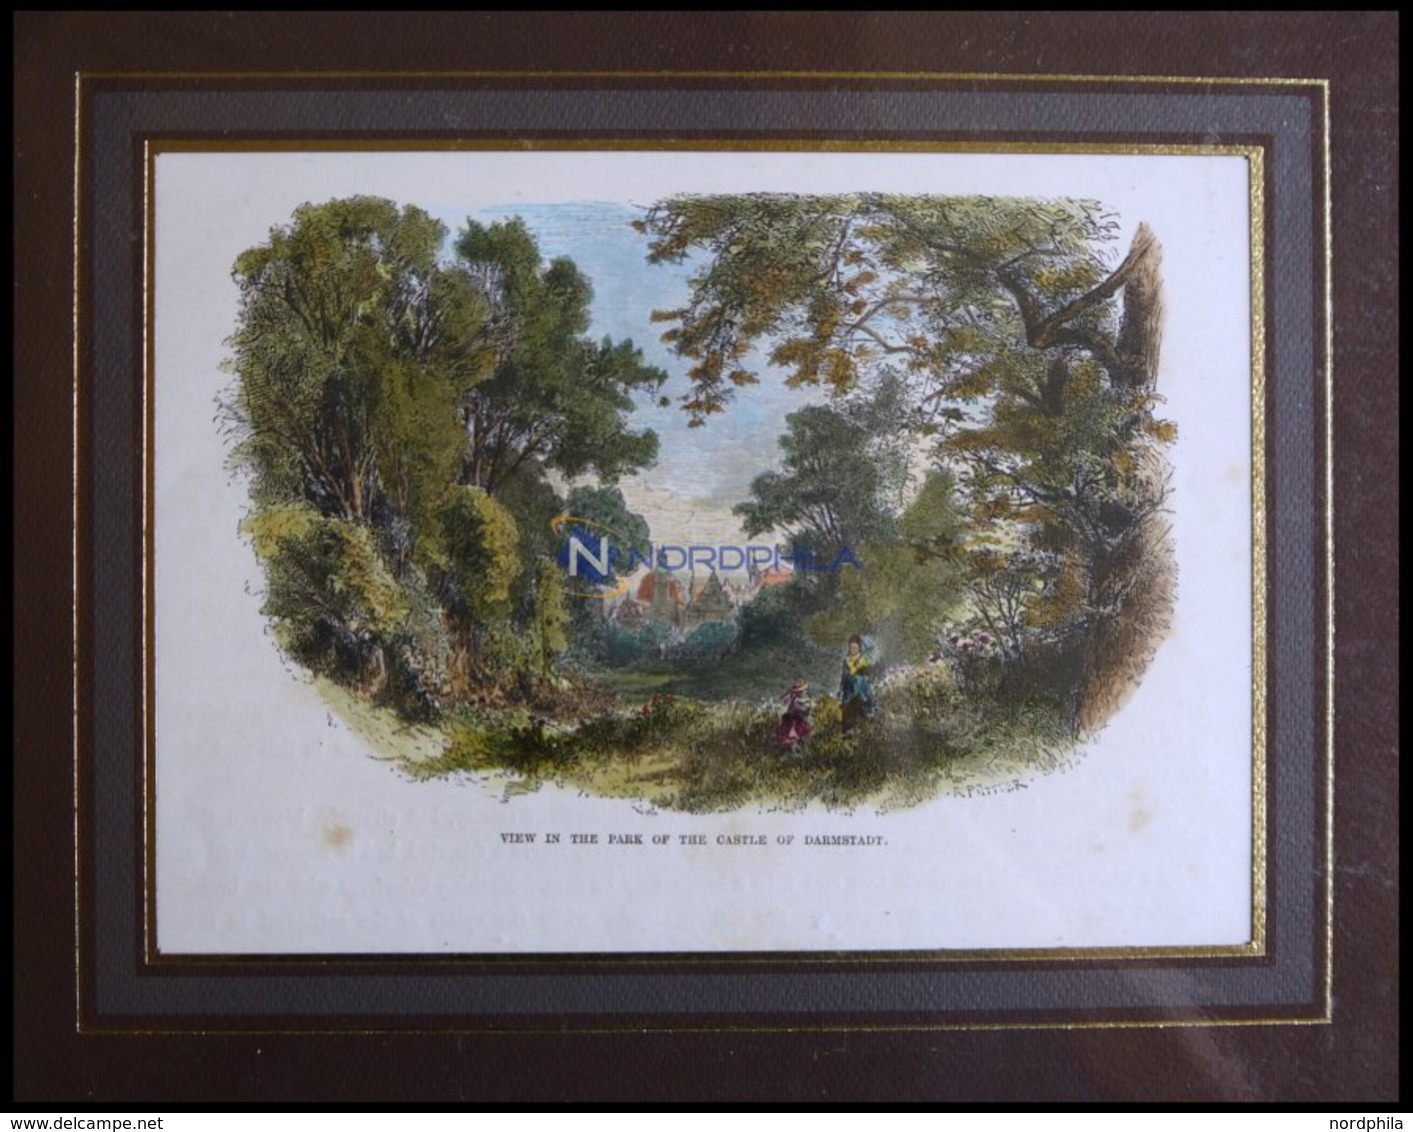 DARMSTADT: Partie Aus Dem Schloßpark, Kolorierter Holzstich Von Püttner Um 1880 - Lithographies